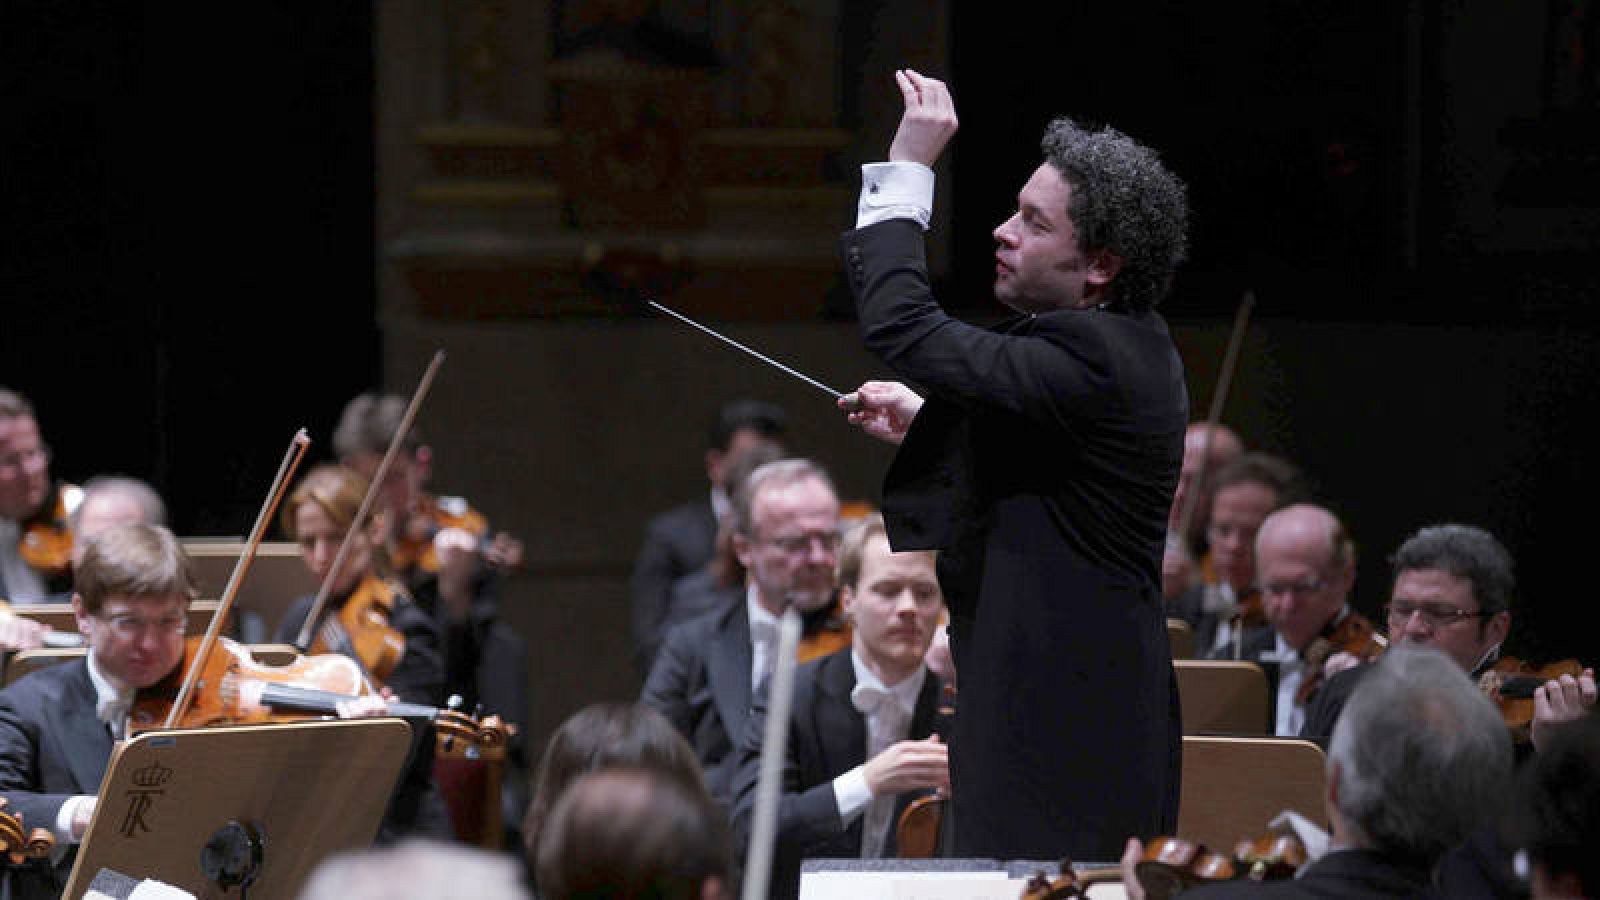 Fotografía facilitada por el Teatro Real del venezolano Gustavo Dudamel dirigiendo a la Filarmónica de Viena durante el concierto que ha ofrecido este sábado, 13 de enero de 2018, en el Teatro Real (Madrid). 